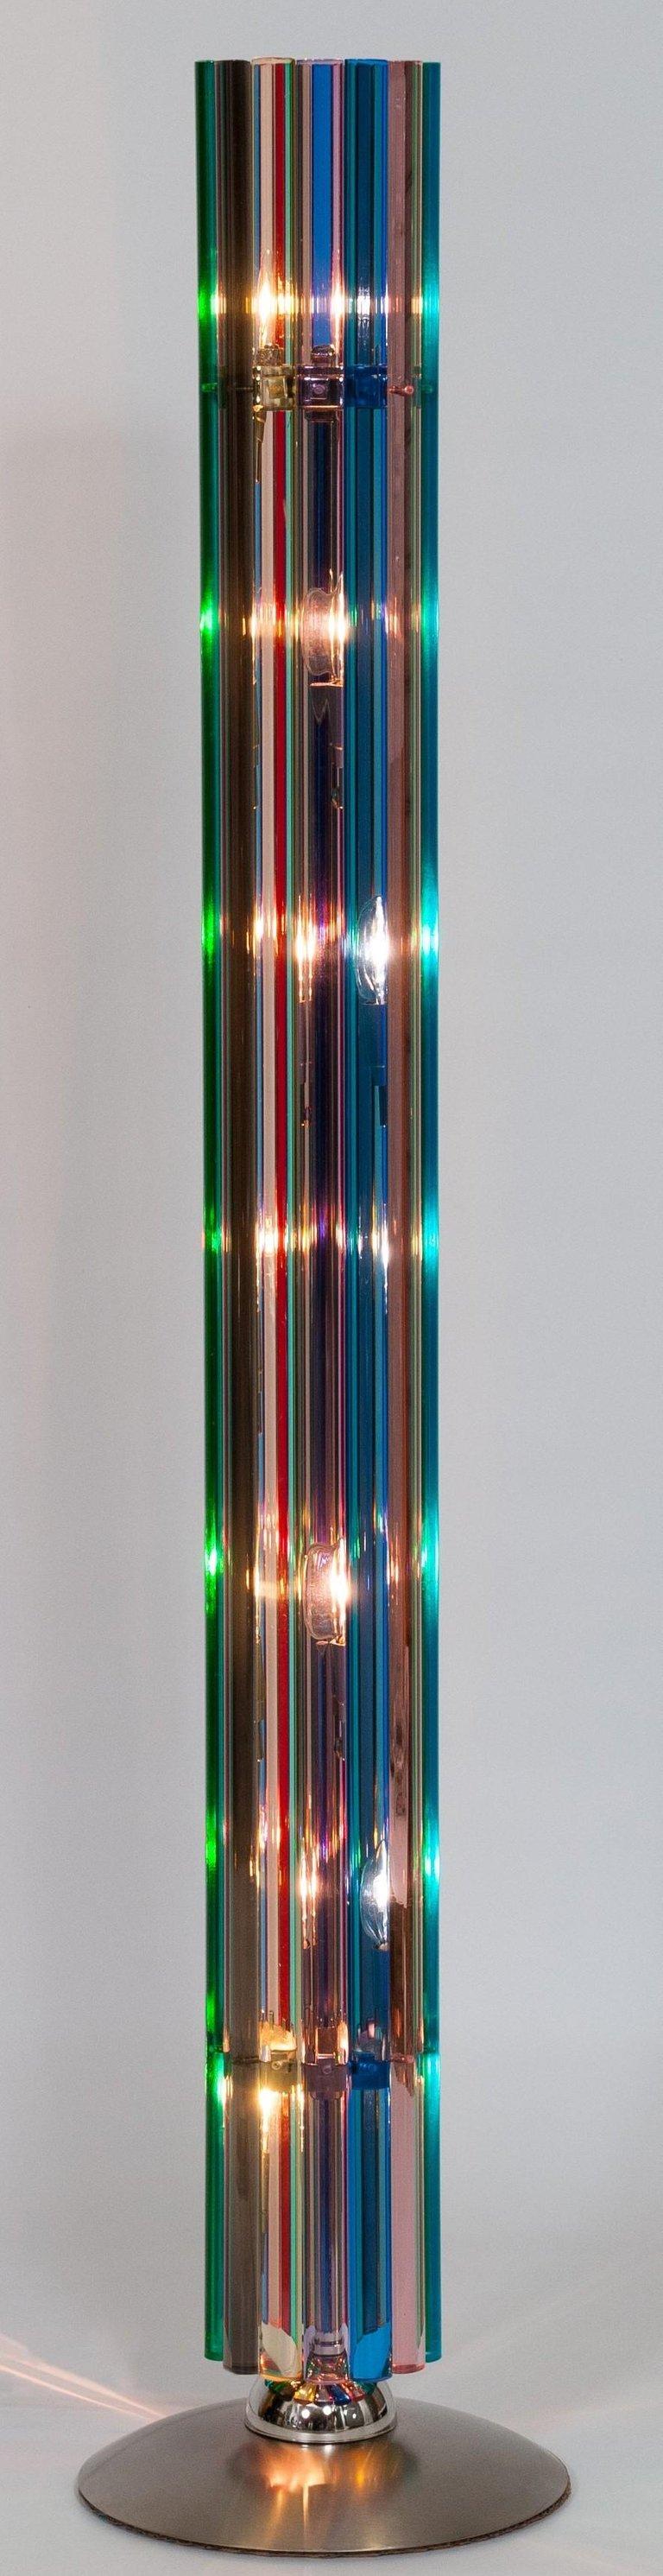 Italienische Tisch- und Stehlampe Rainbow aus geblasenem Murano-Glas, 1980, Venedig.
Dieses außergewöhnliche und einzigartige Set besteht aus einer Tischleuchte und einer Stehleuchte. Beide Stücke wurden in den 1980er Jahren auf der venezianischen